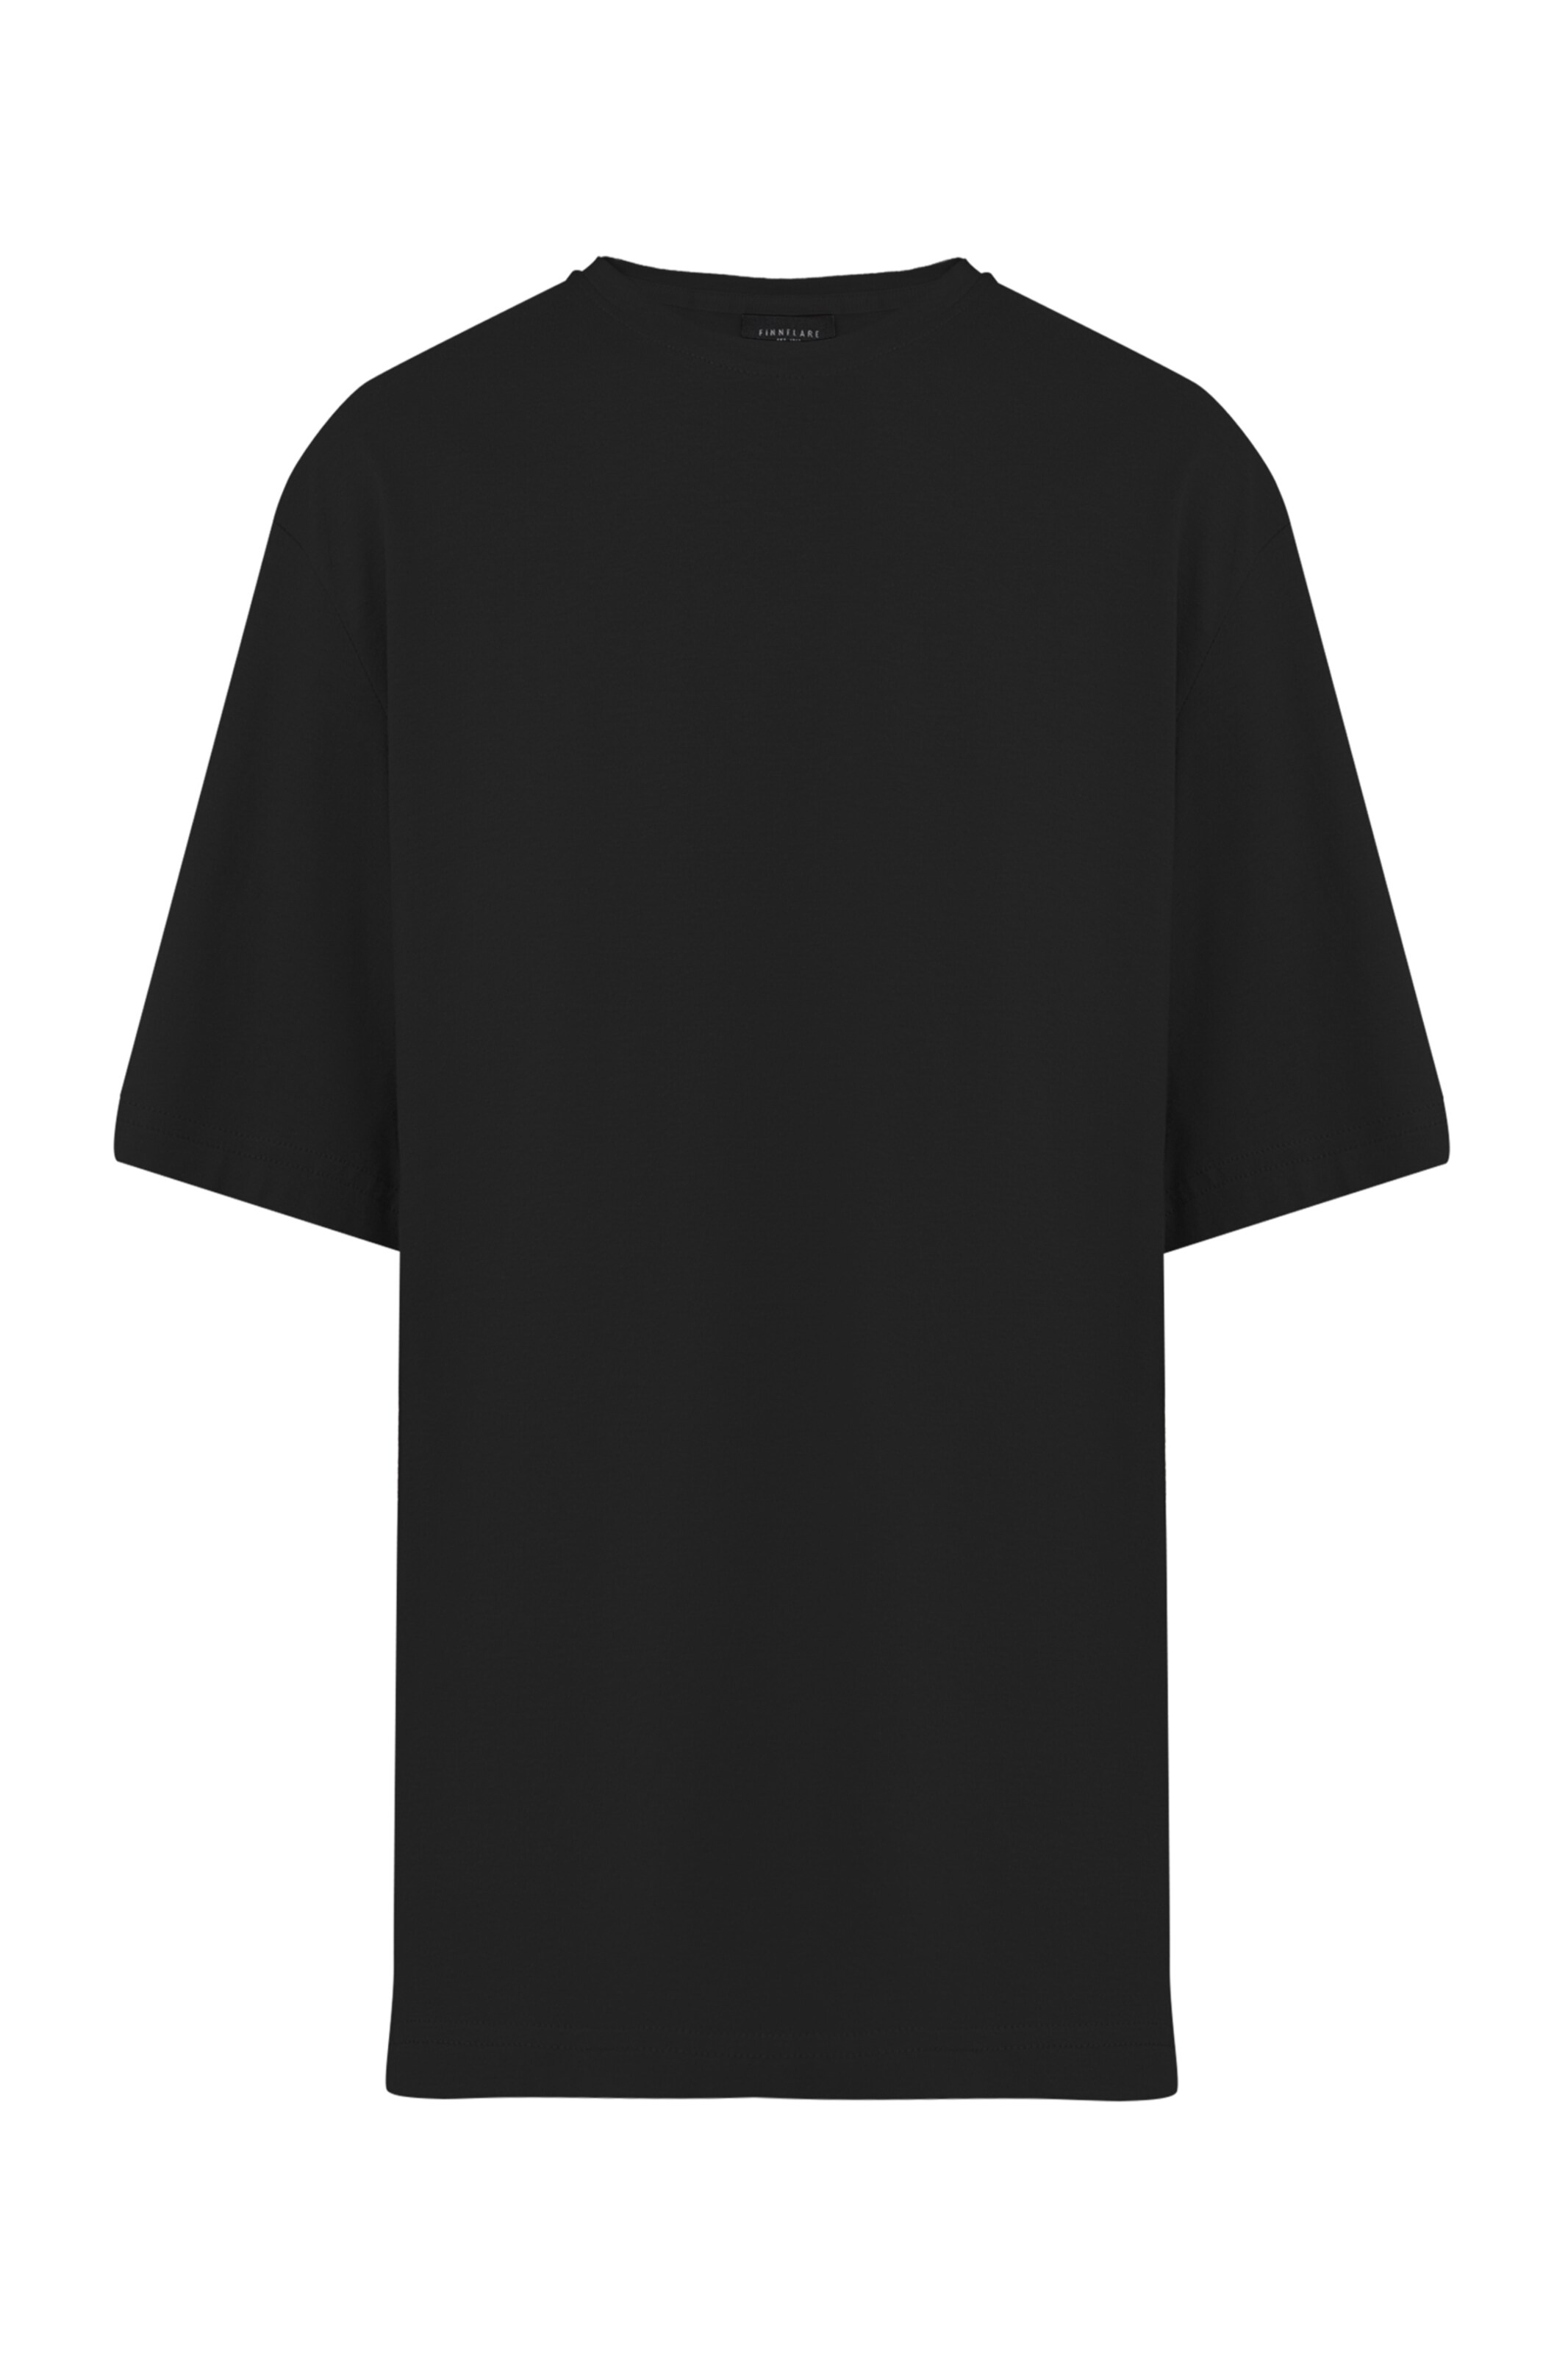 Frauen Shirts & Tops Finn Flare Basic-Shirt in Schwarz - KC89142